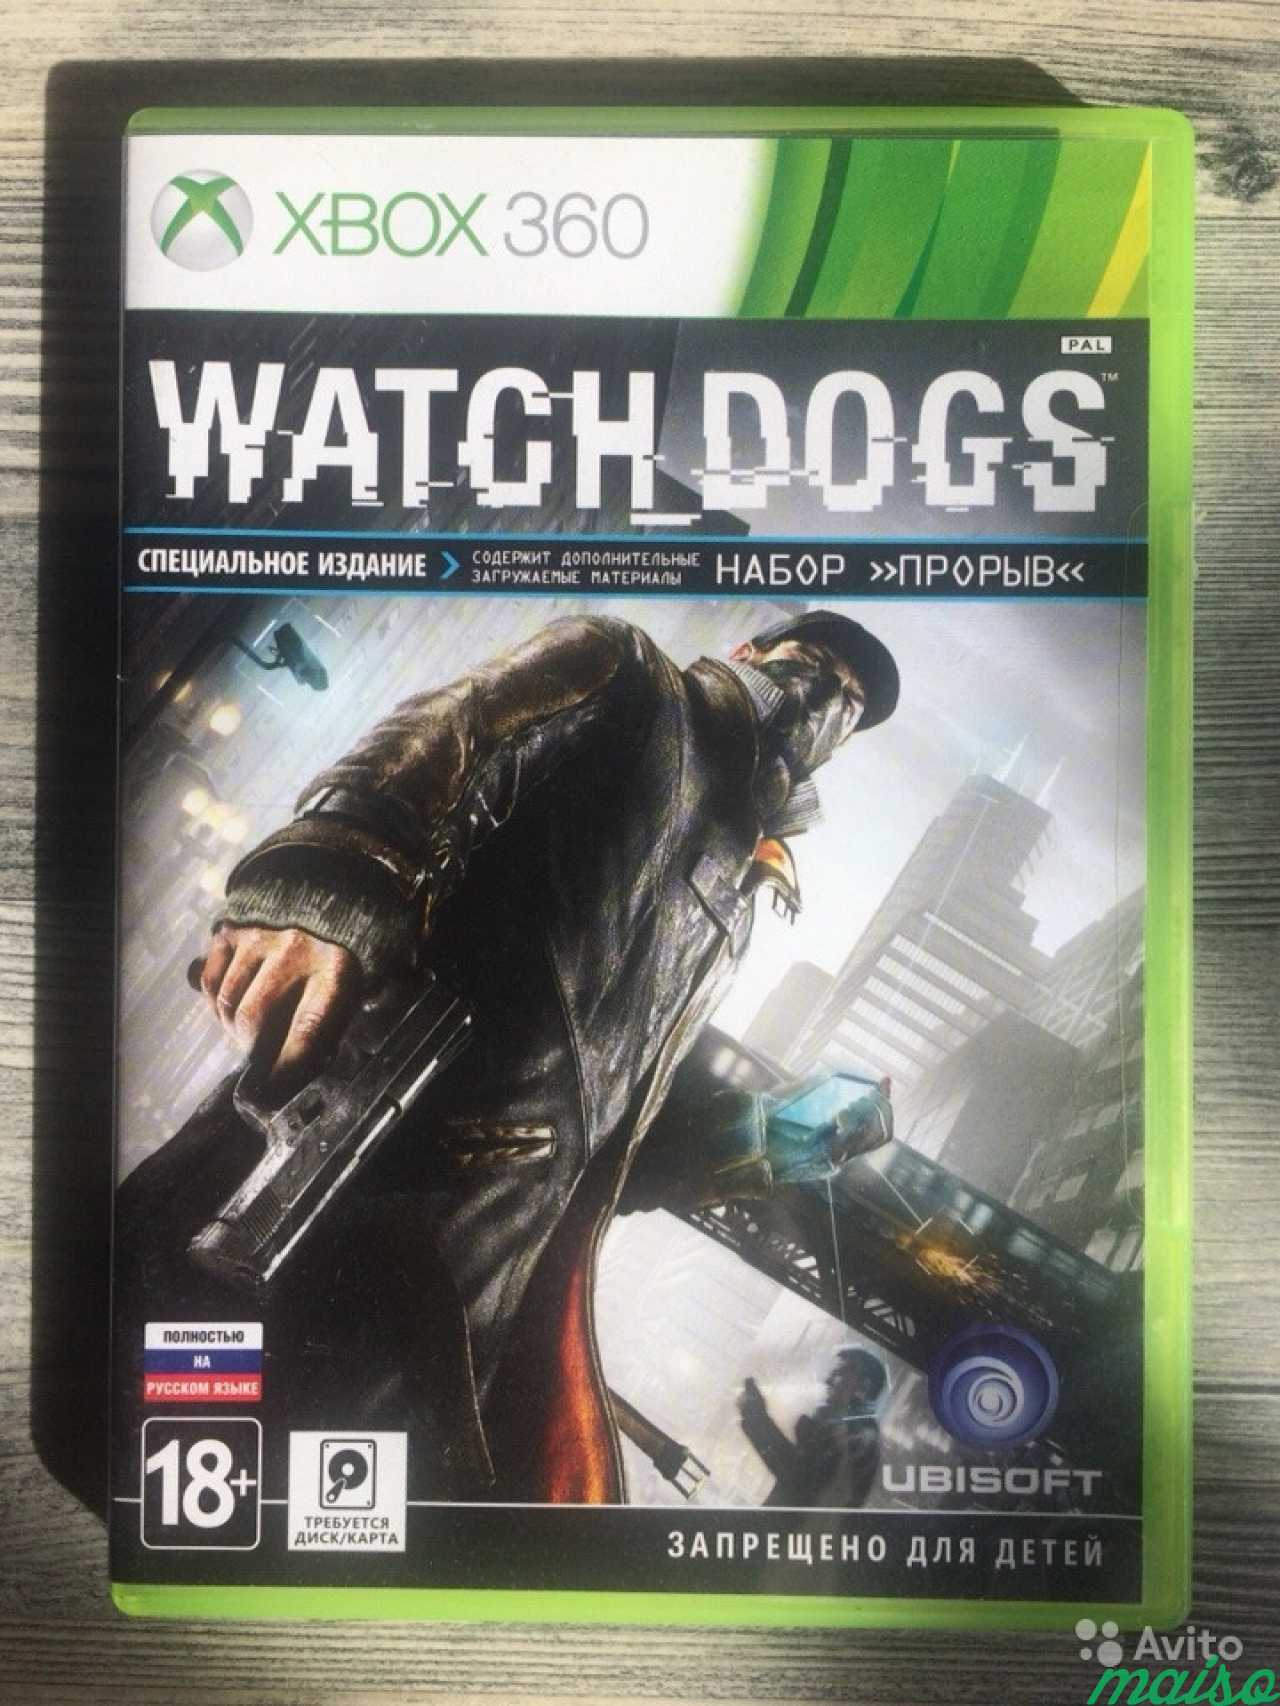 Игры xbox 360 москва. Watch Dogs Xbox 360. Вотч догс на Xbox 360. Вотч догс 1 Xbox 360. Watch Dogs Xbox 360 диск.